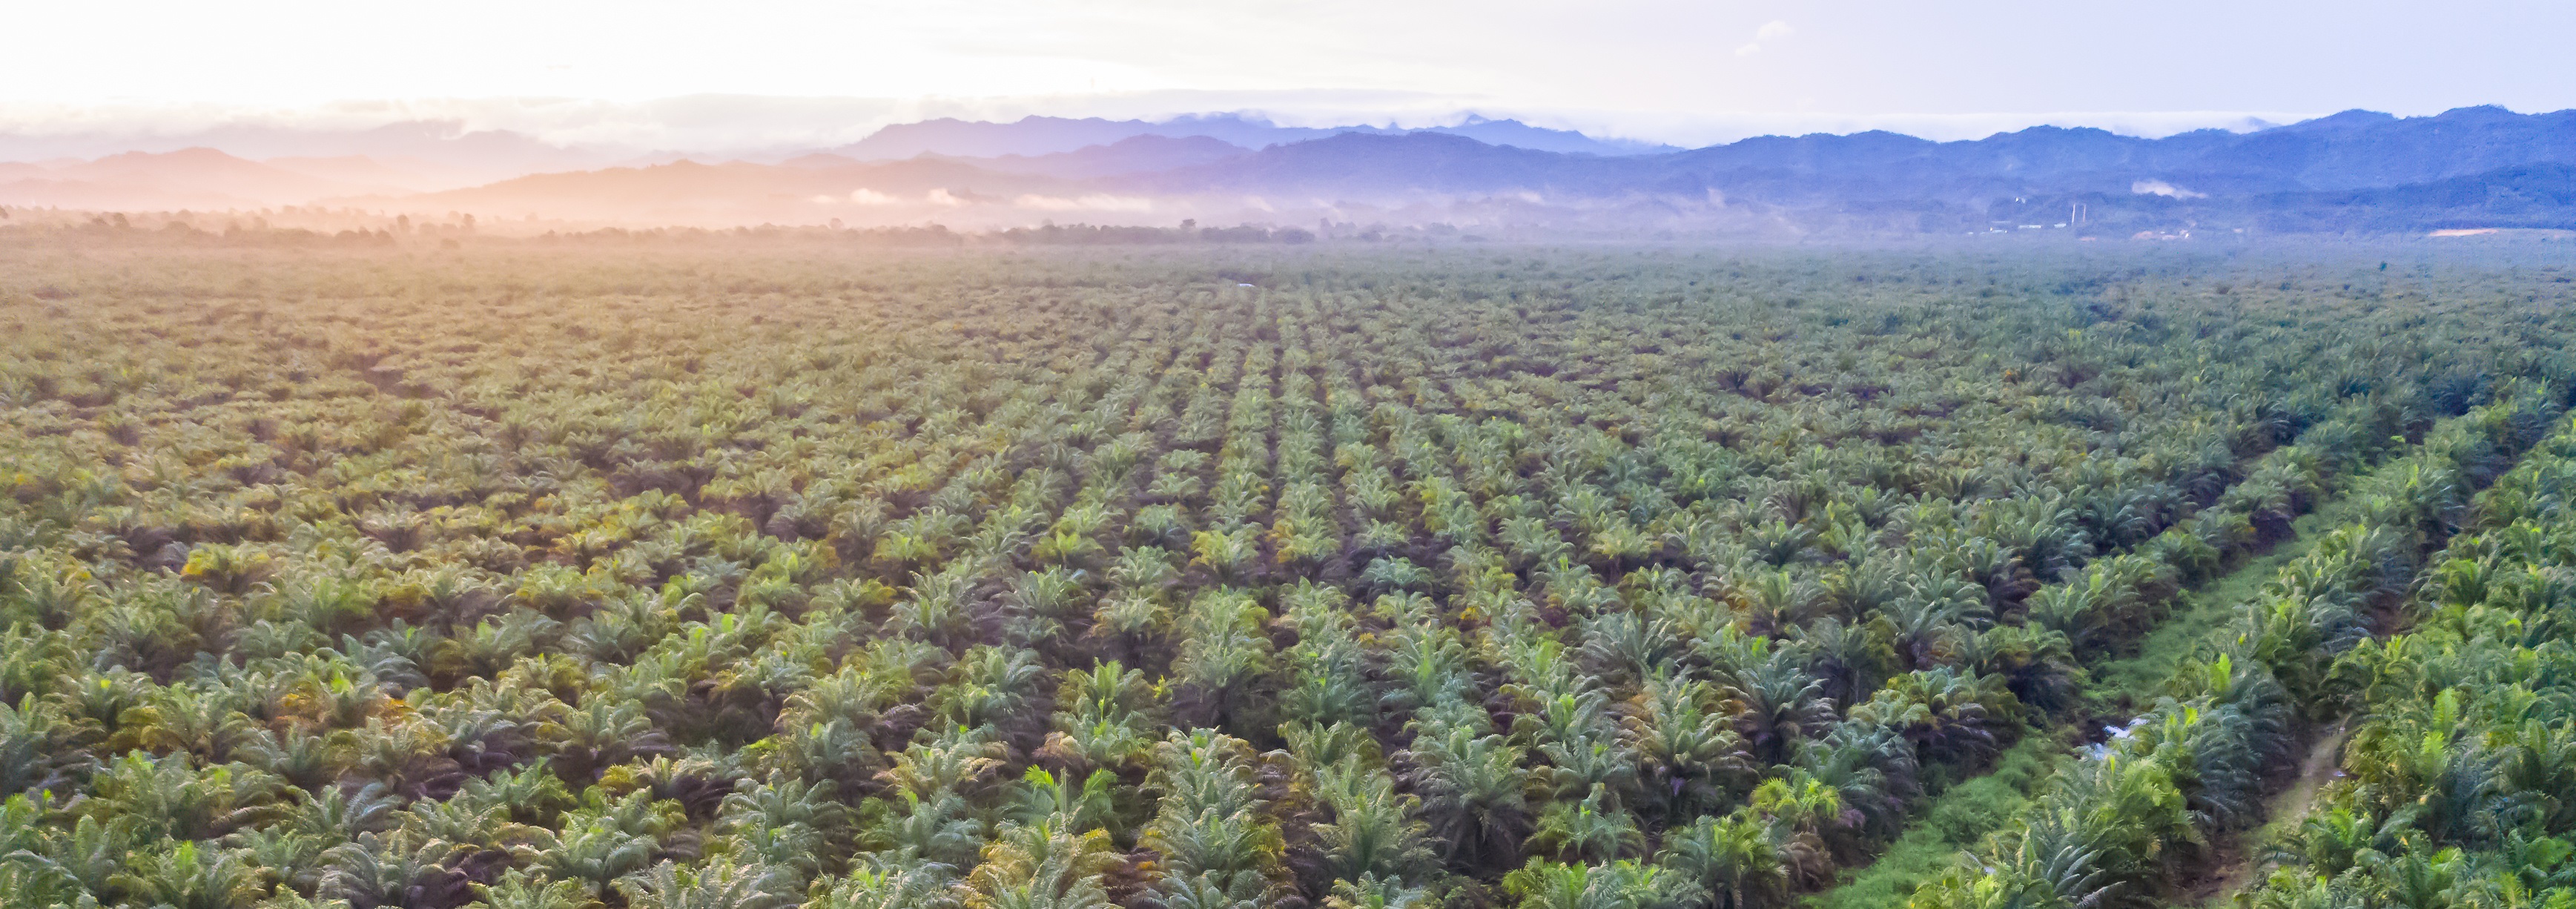 L'huile de palme est pointée du doigt pour ses effets sur la santé et la déforestation : qu'en est-il réellement ? © Yusnizam Yusof, Adobe Stock